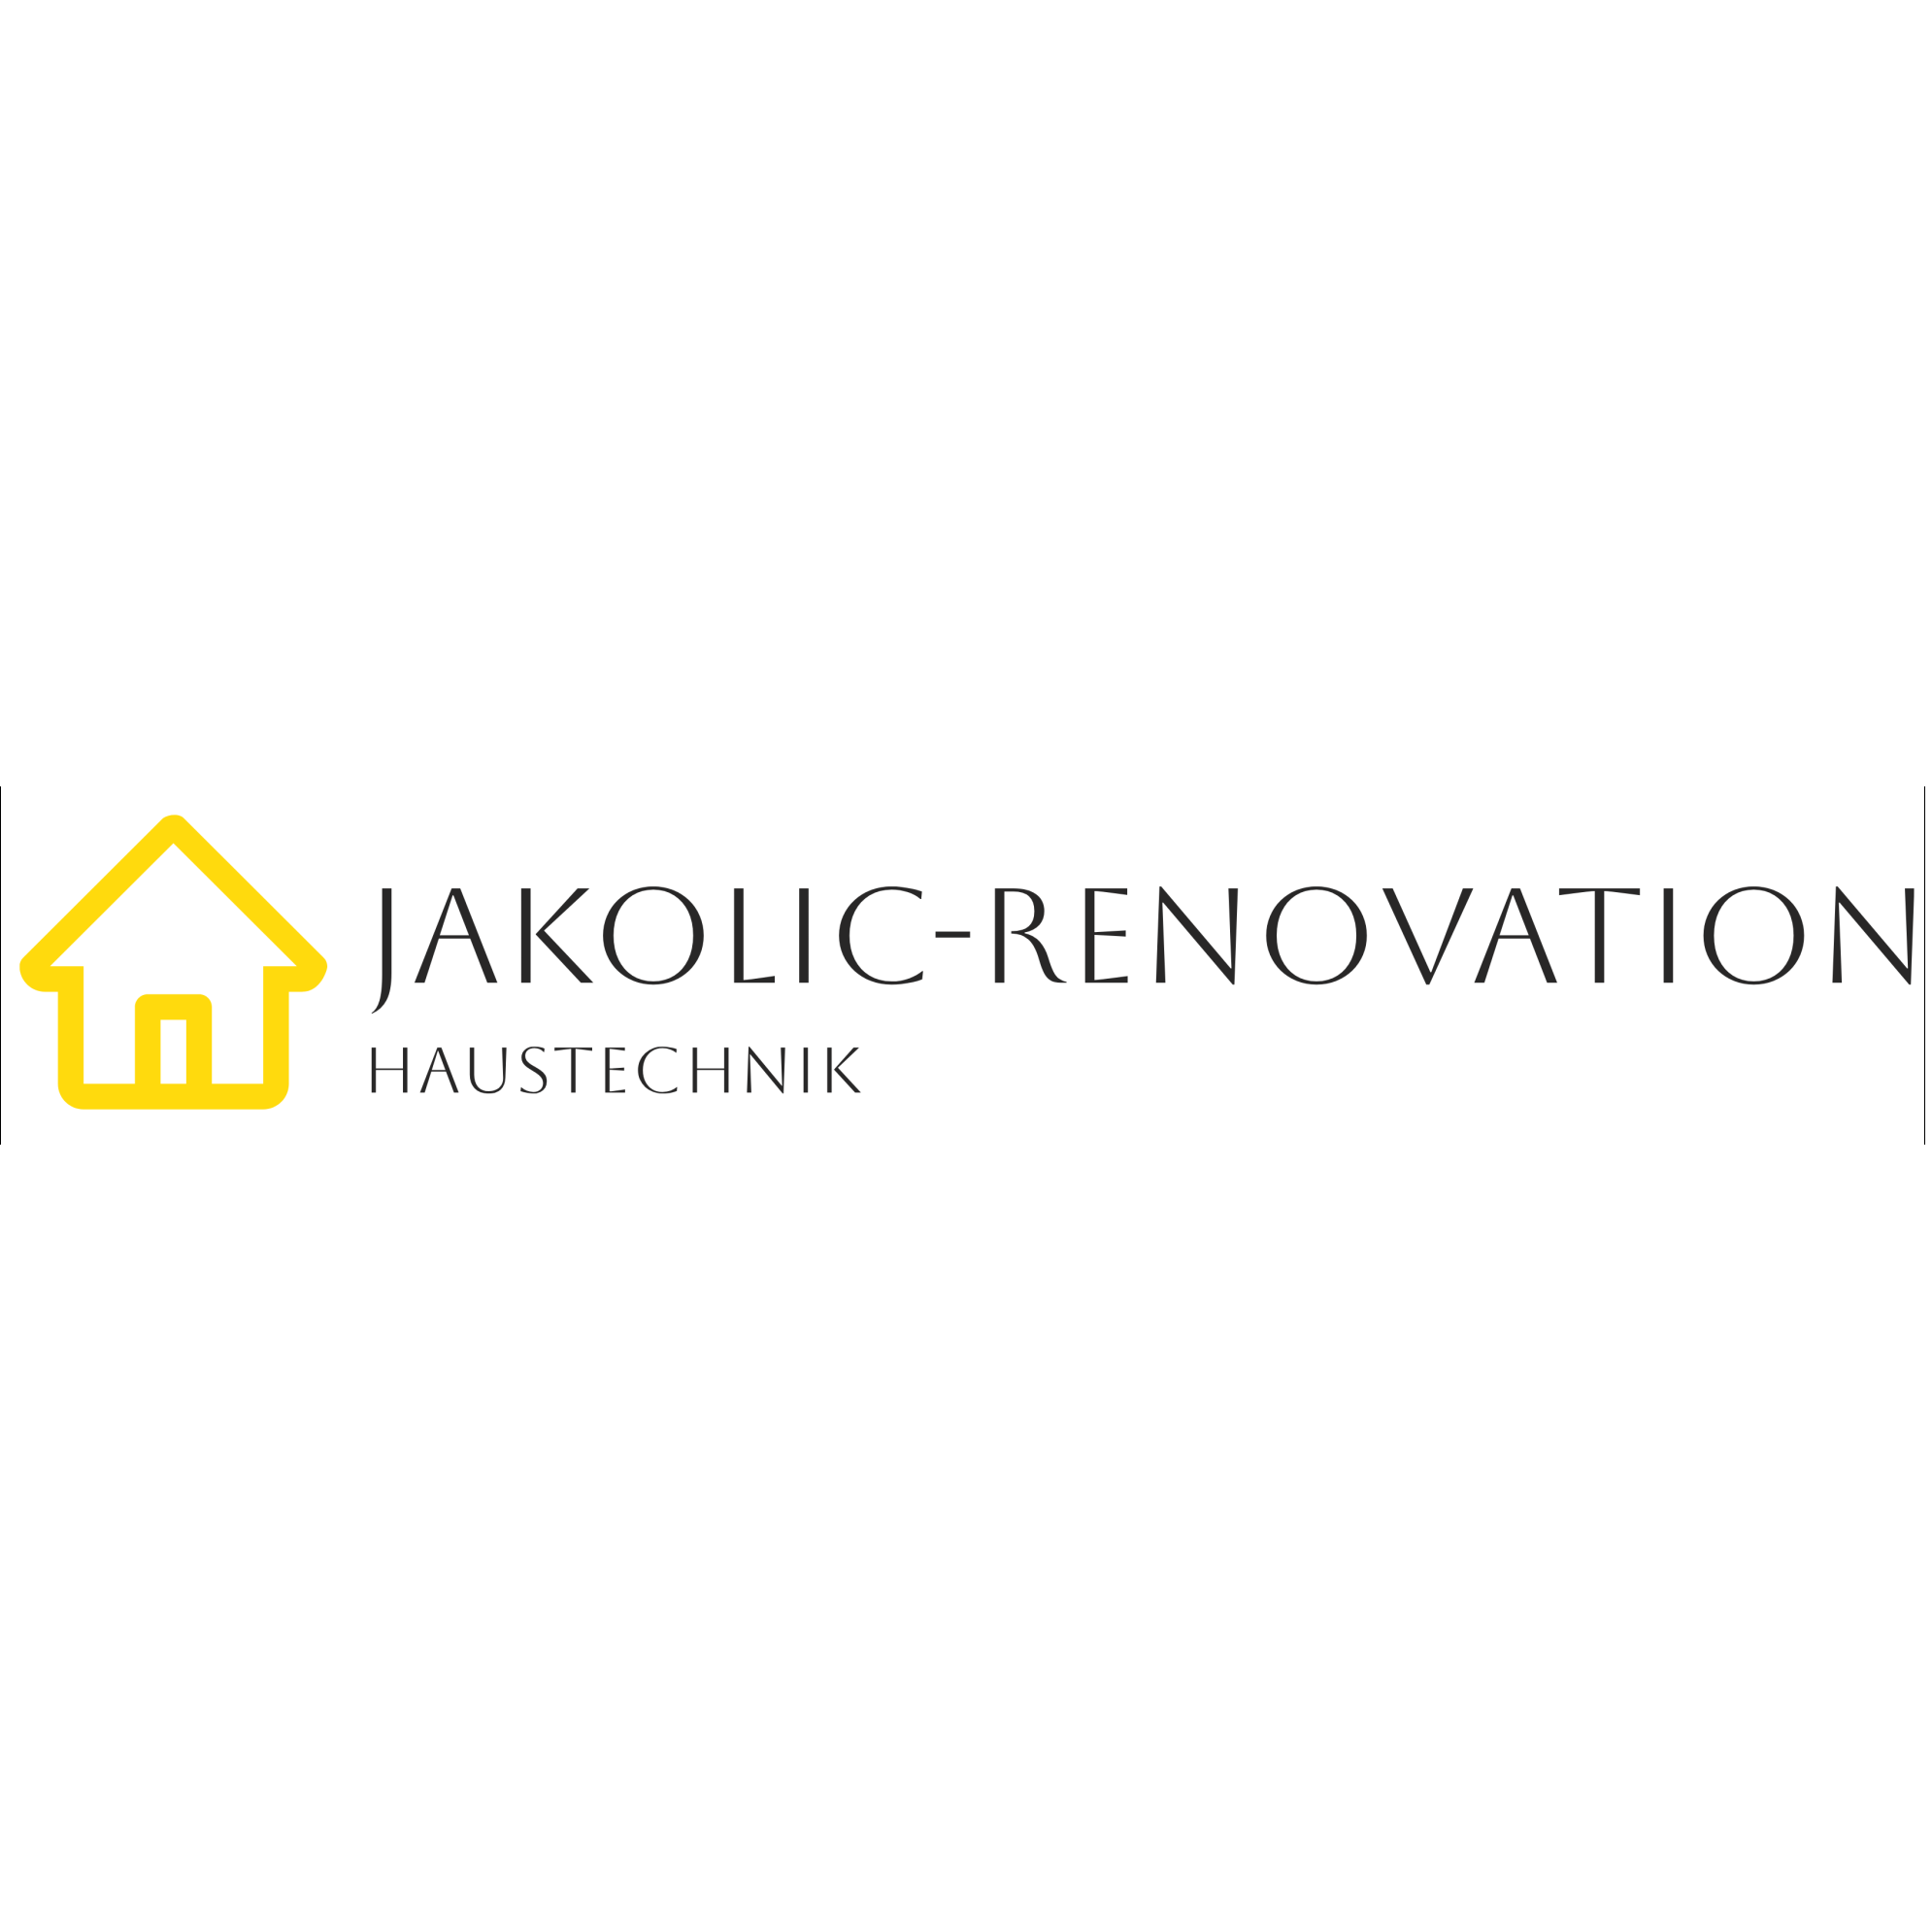 Jakolic-Renovation Logo